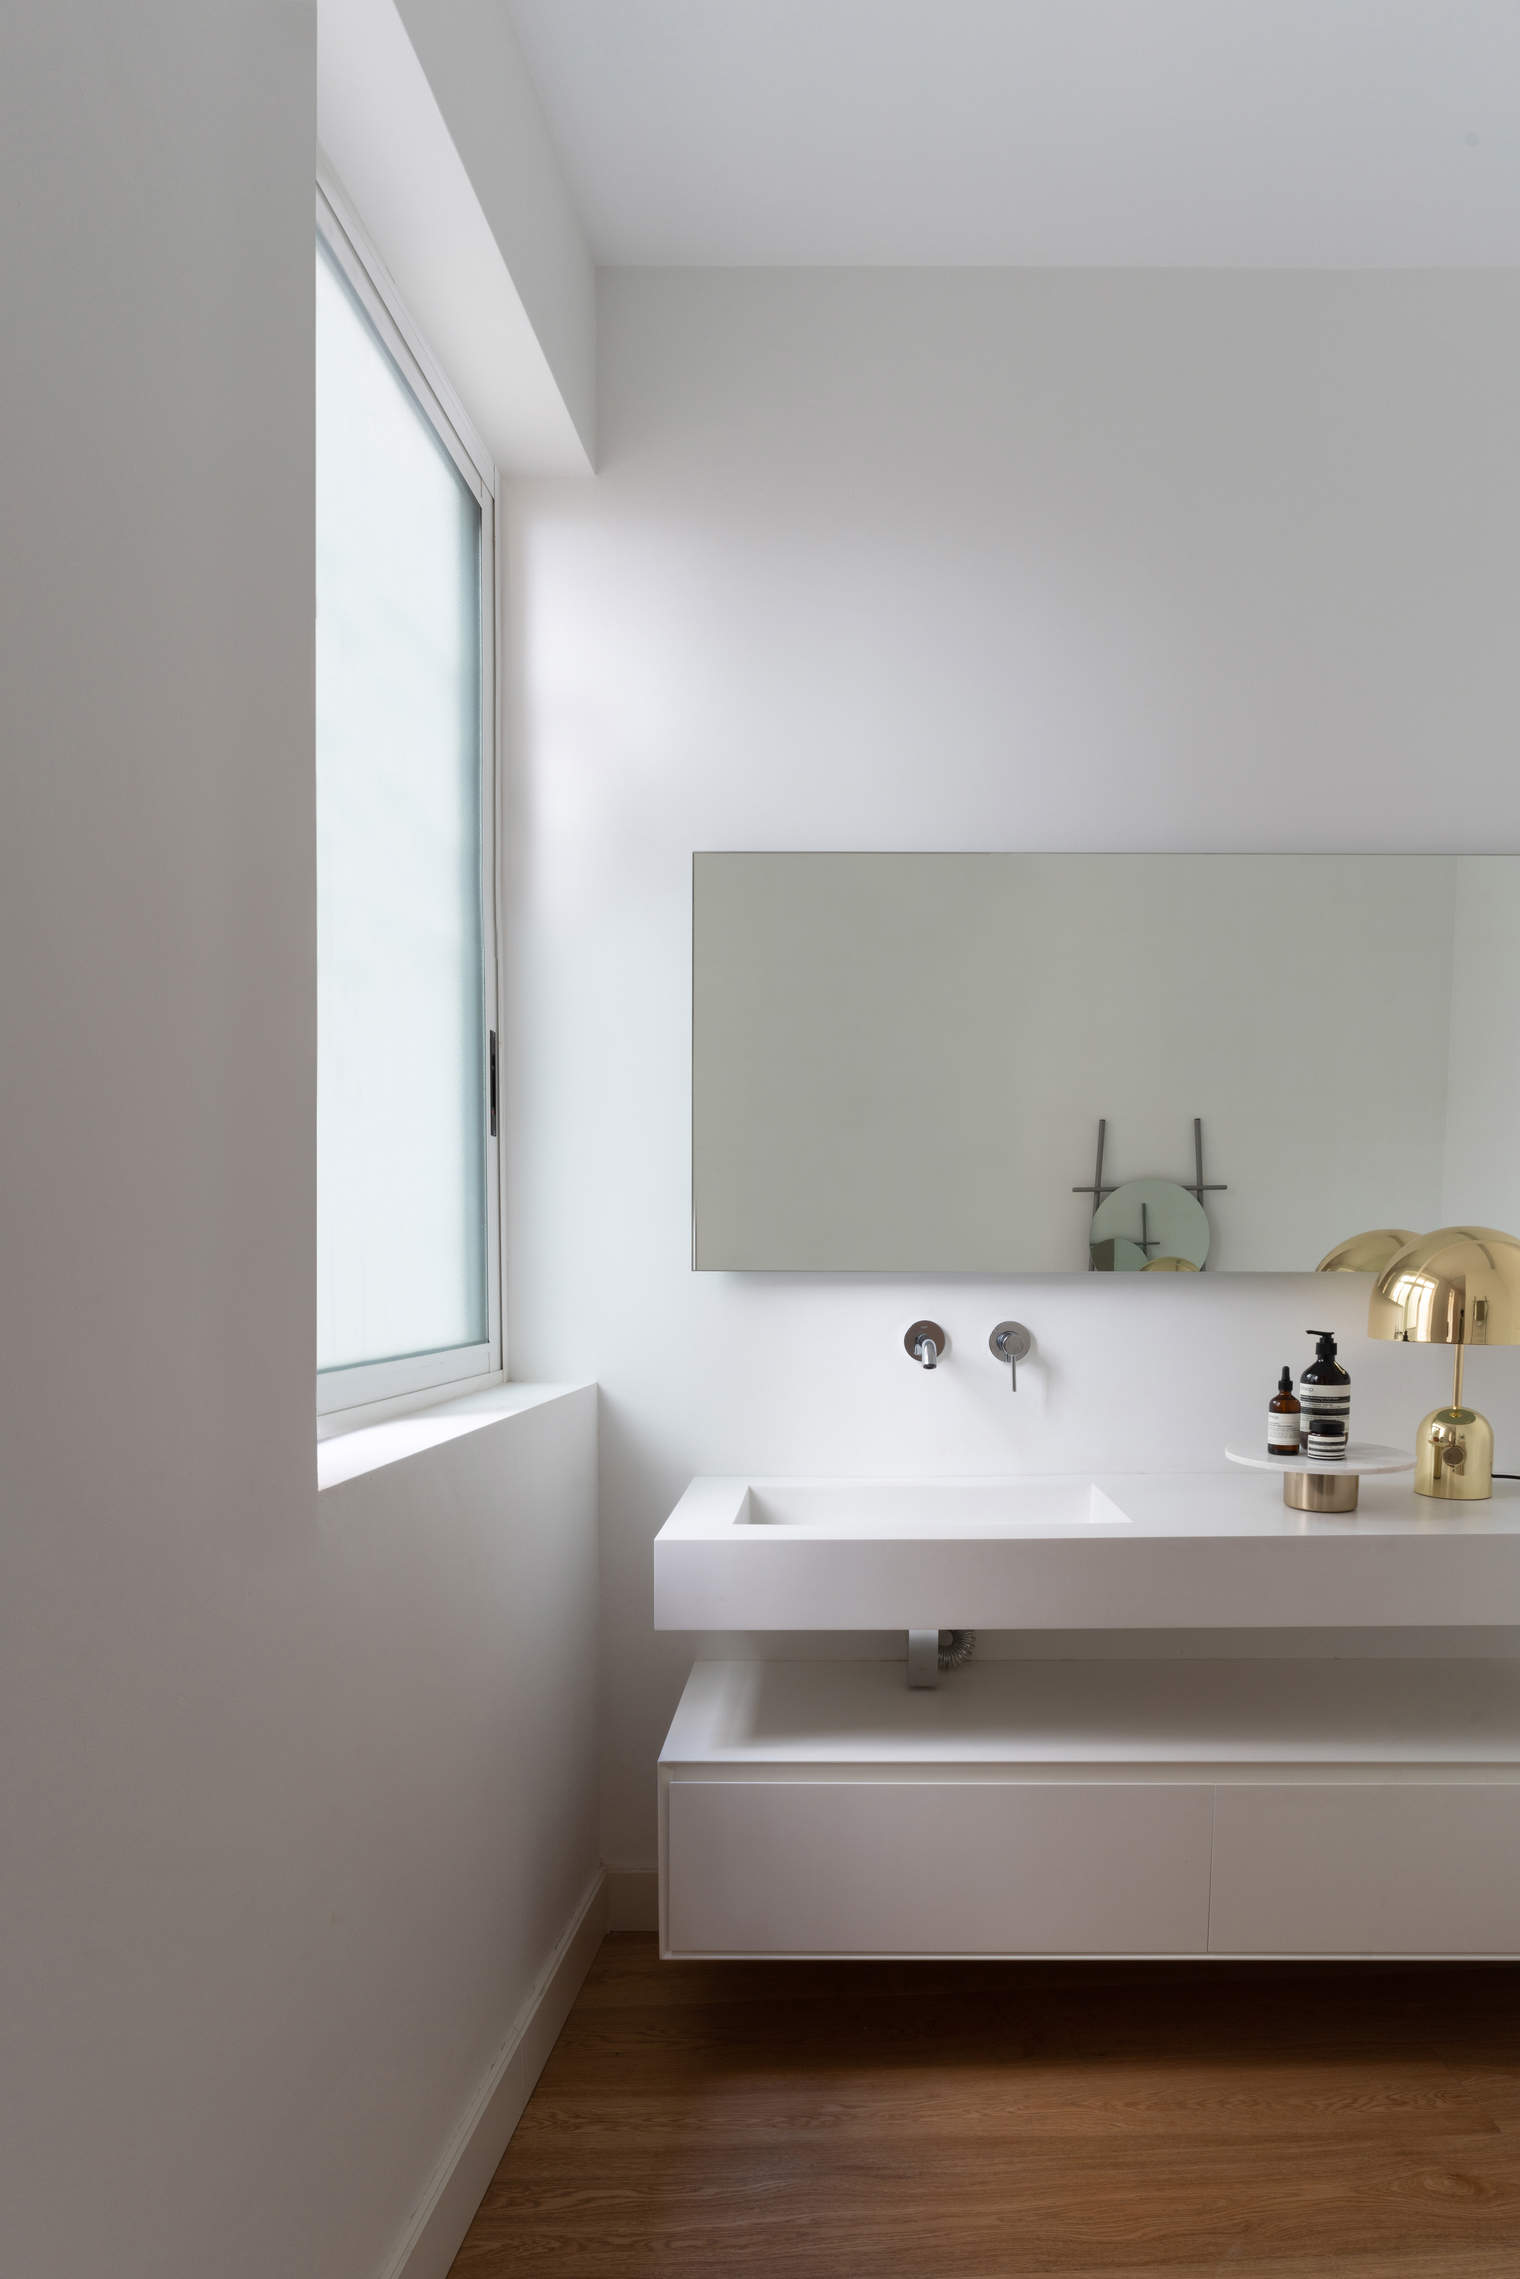 Un cuarto de baño luminoso en tonos blancos.